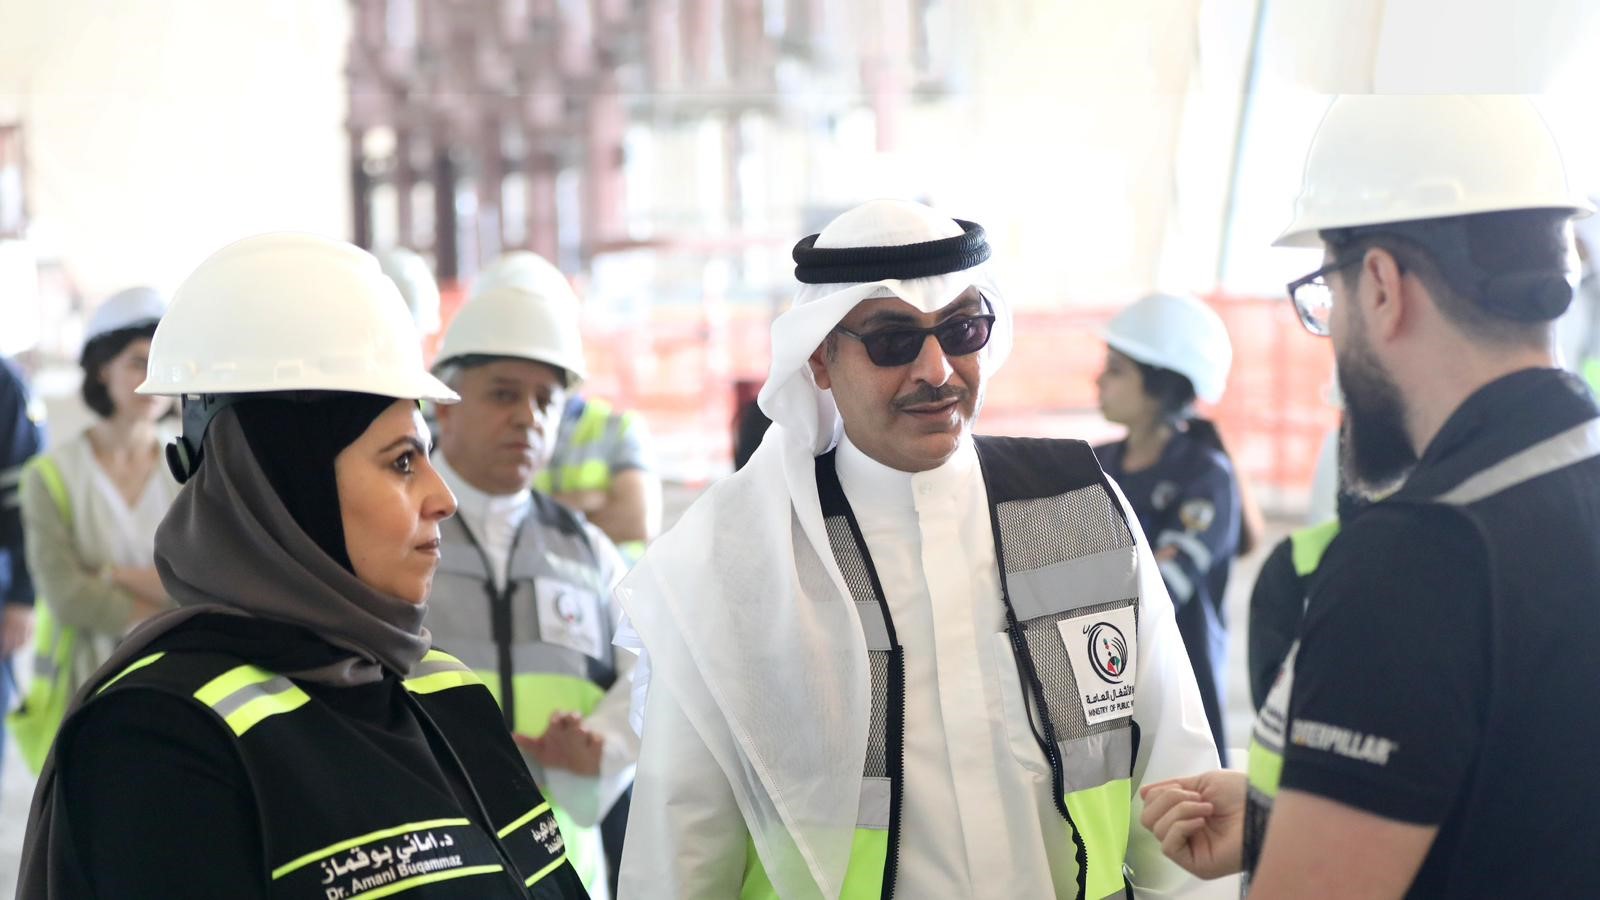 رئيس جهاز متابعة الأداء الحكومي الشيخ أحمد المشعل الاحمد الصباح يتفقد مشروع مطار الكويت الدولي الجديد (مبنى الركاب الجديد II)